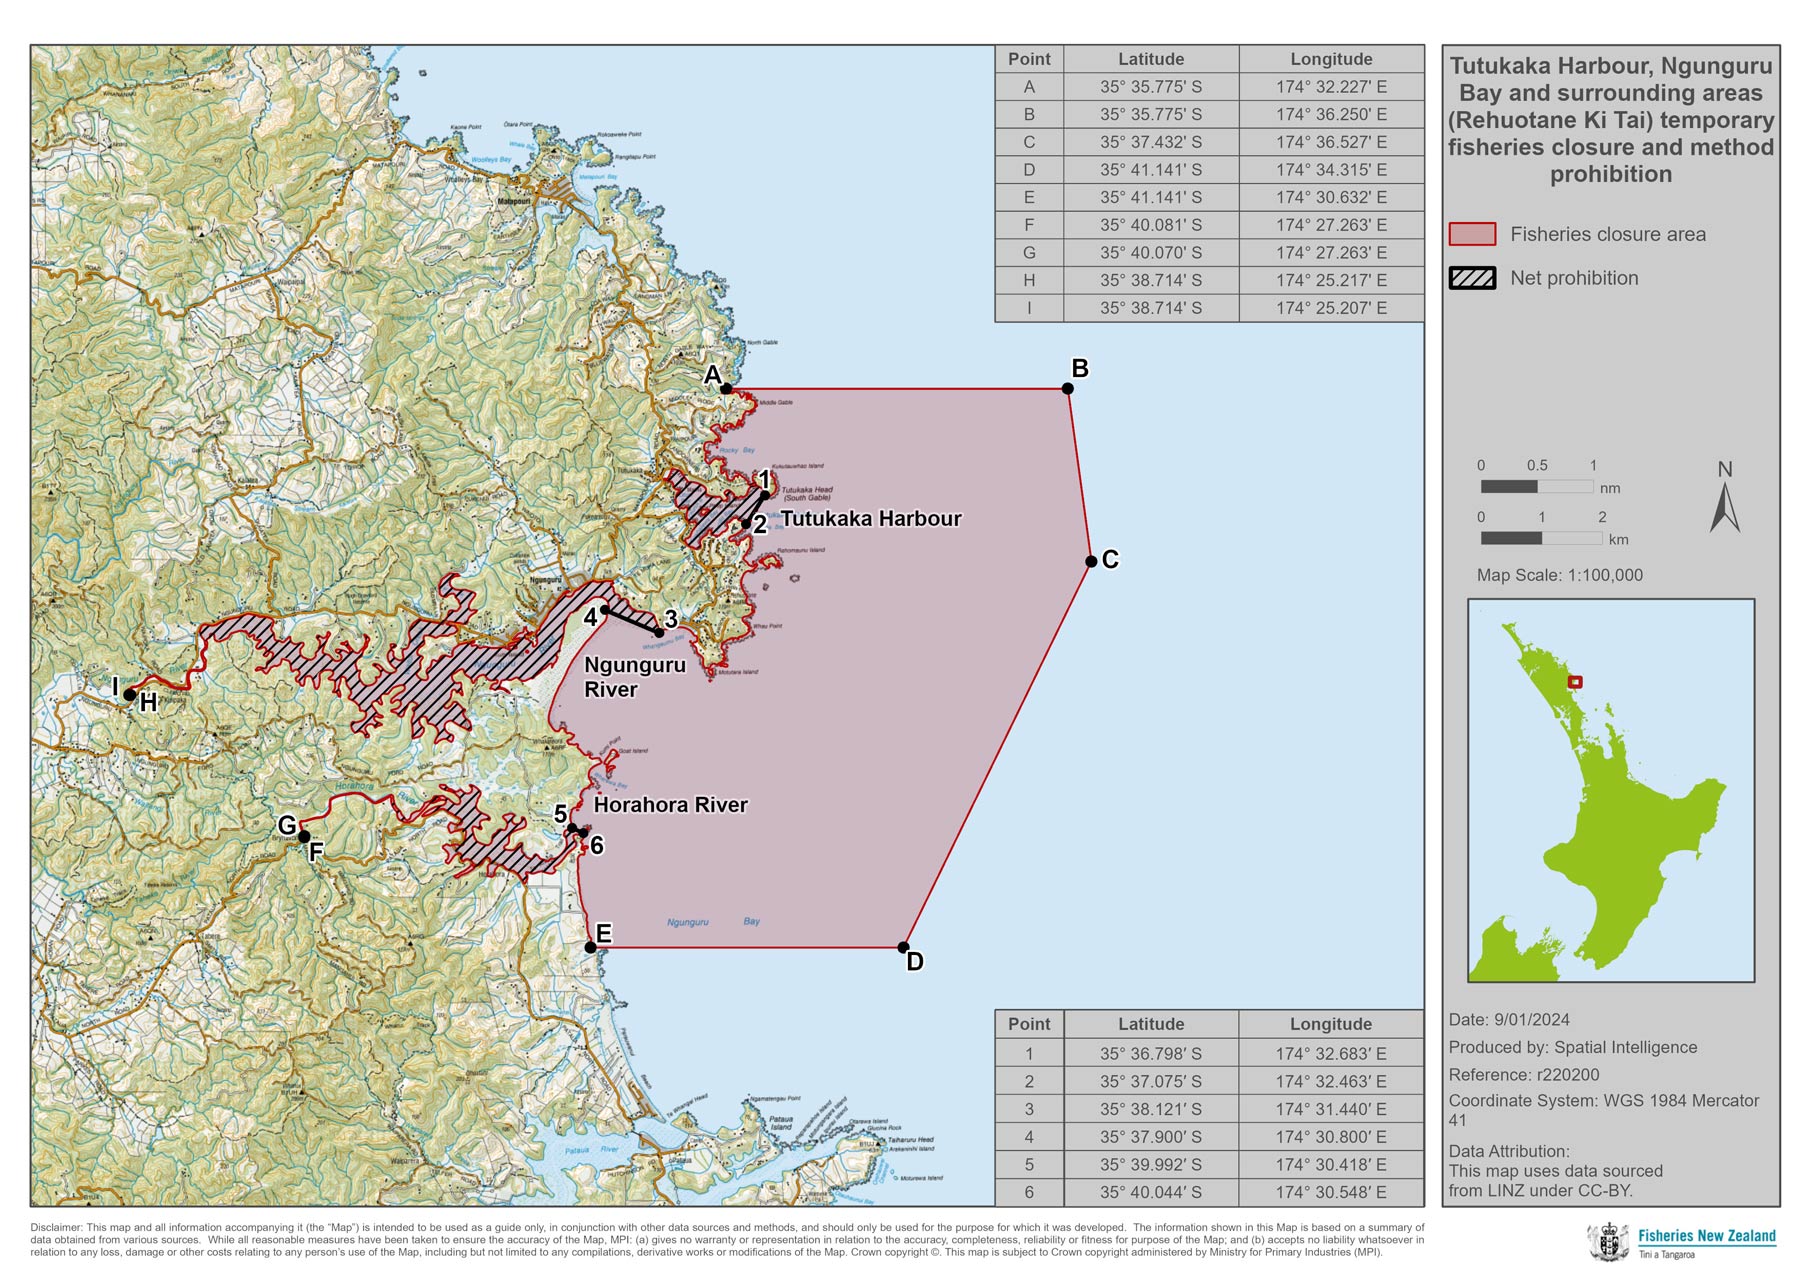 60682 Map Tutukaka Ngunguru and surrounding areas fisheries closure and net prohibition